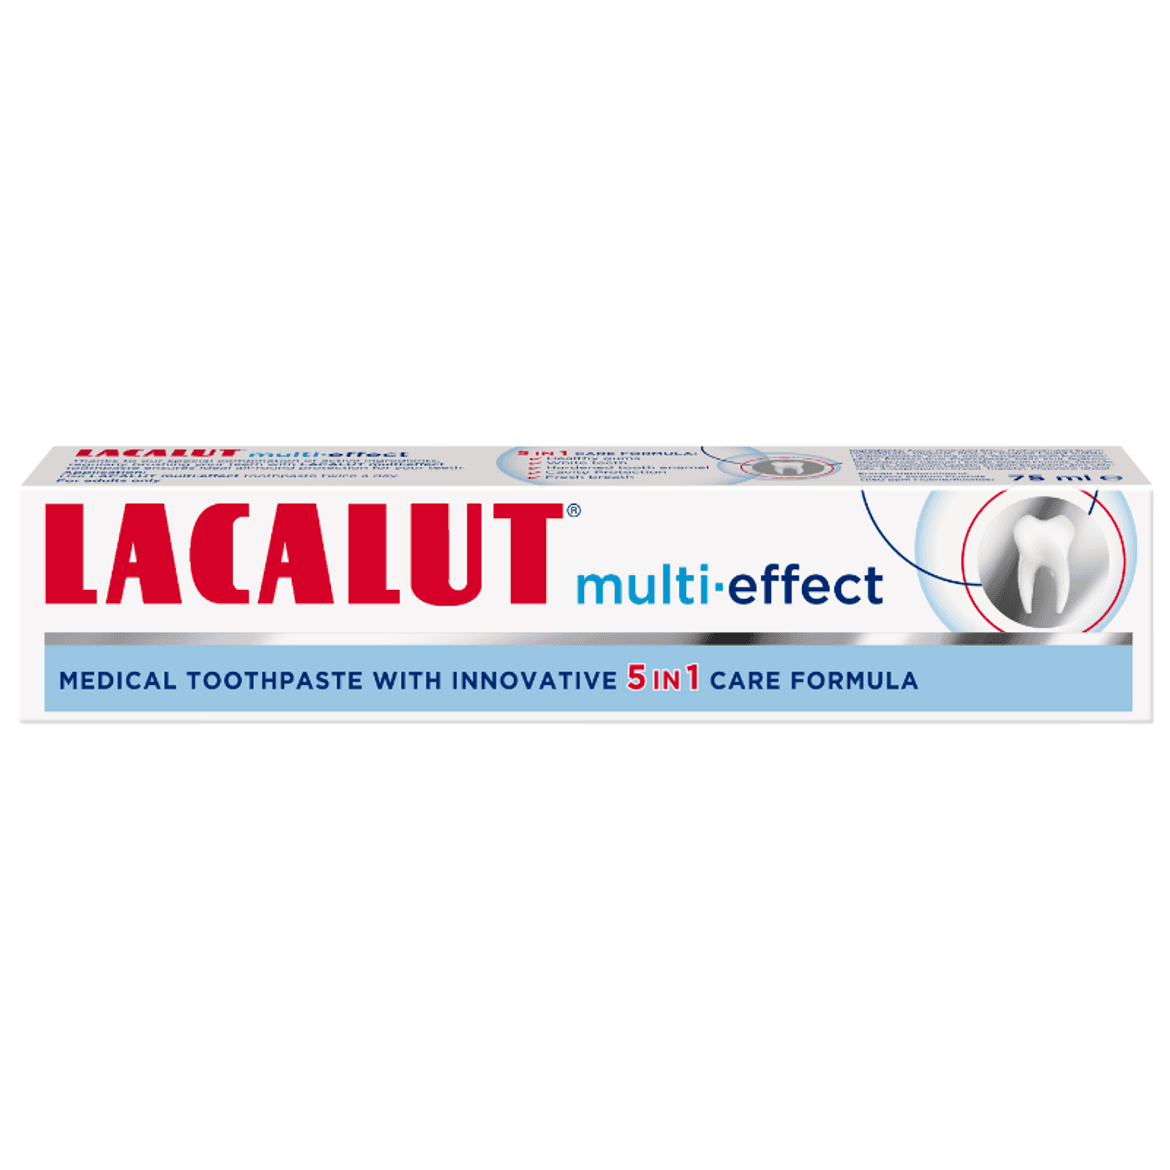 Lacalut fogkrém Multi-effect